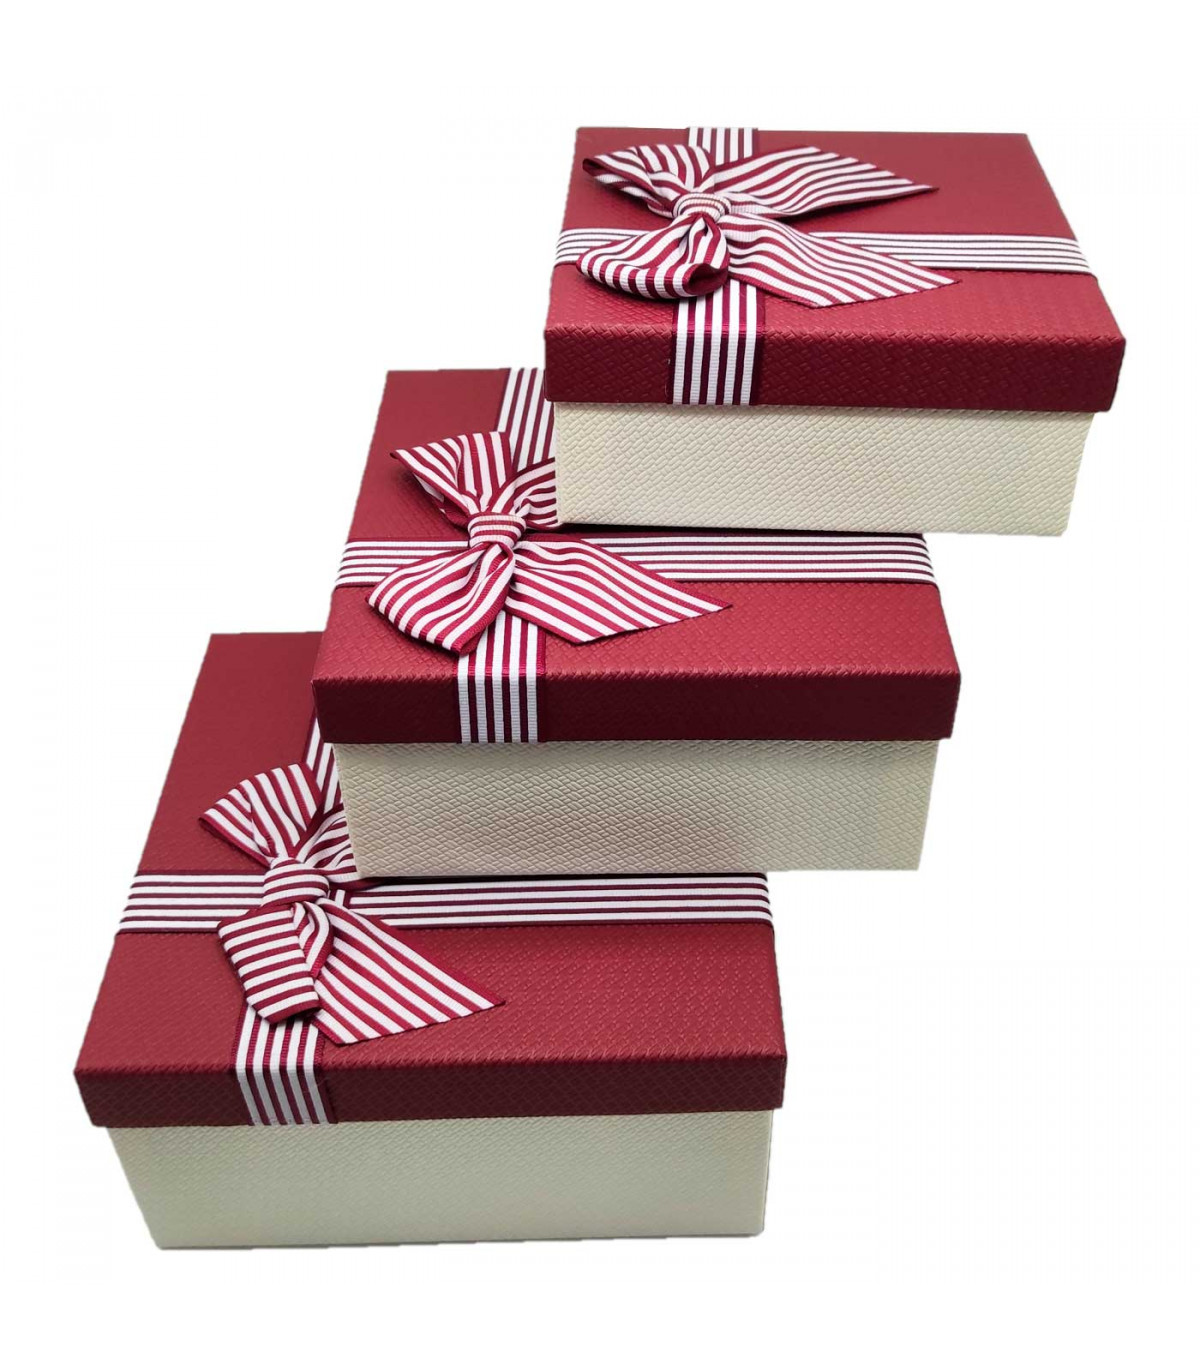 Set de 3 cajas para regalo diferentes tamaños con frase de